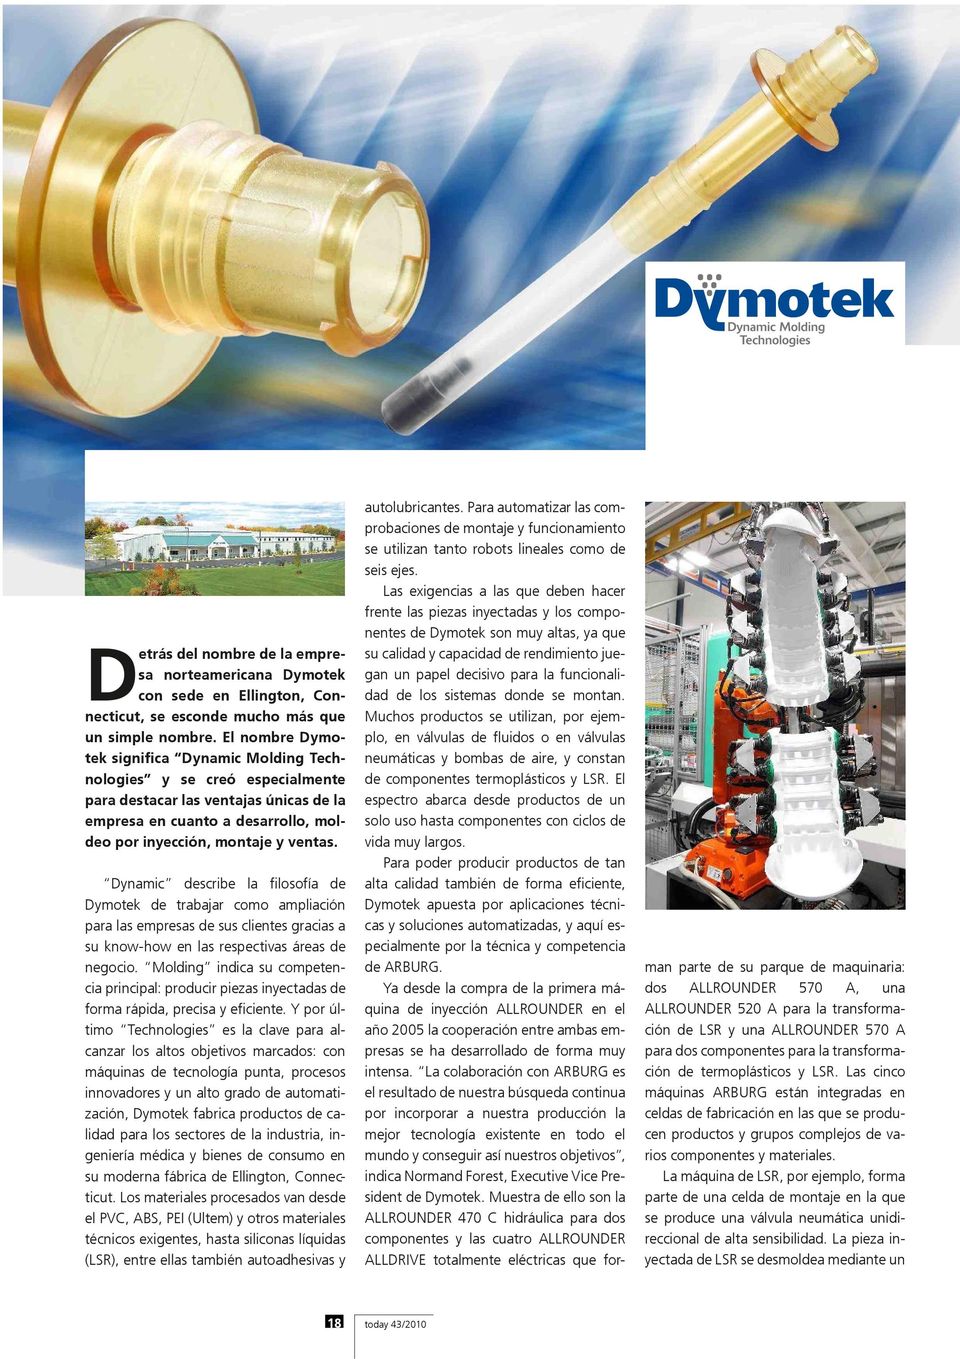 Dynamic describe la filosofía de Dymotek de trabajar como ampliación para las empresas de sus clientes gracias a su know-how en las respectivas áreas de negocio.